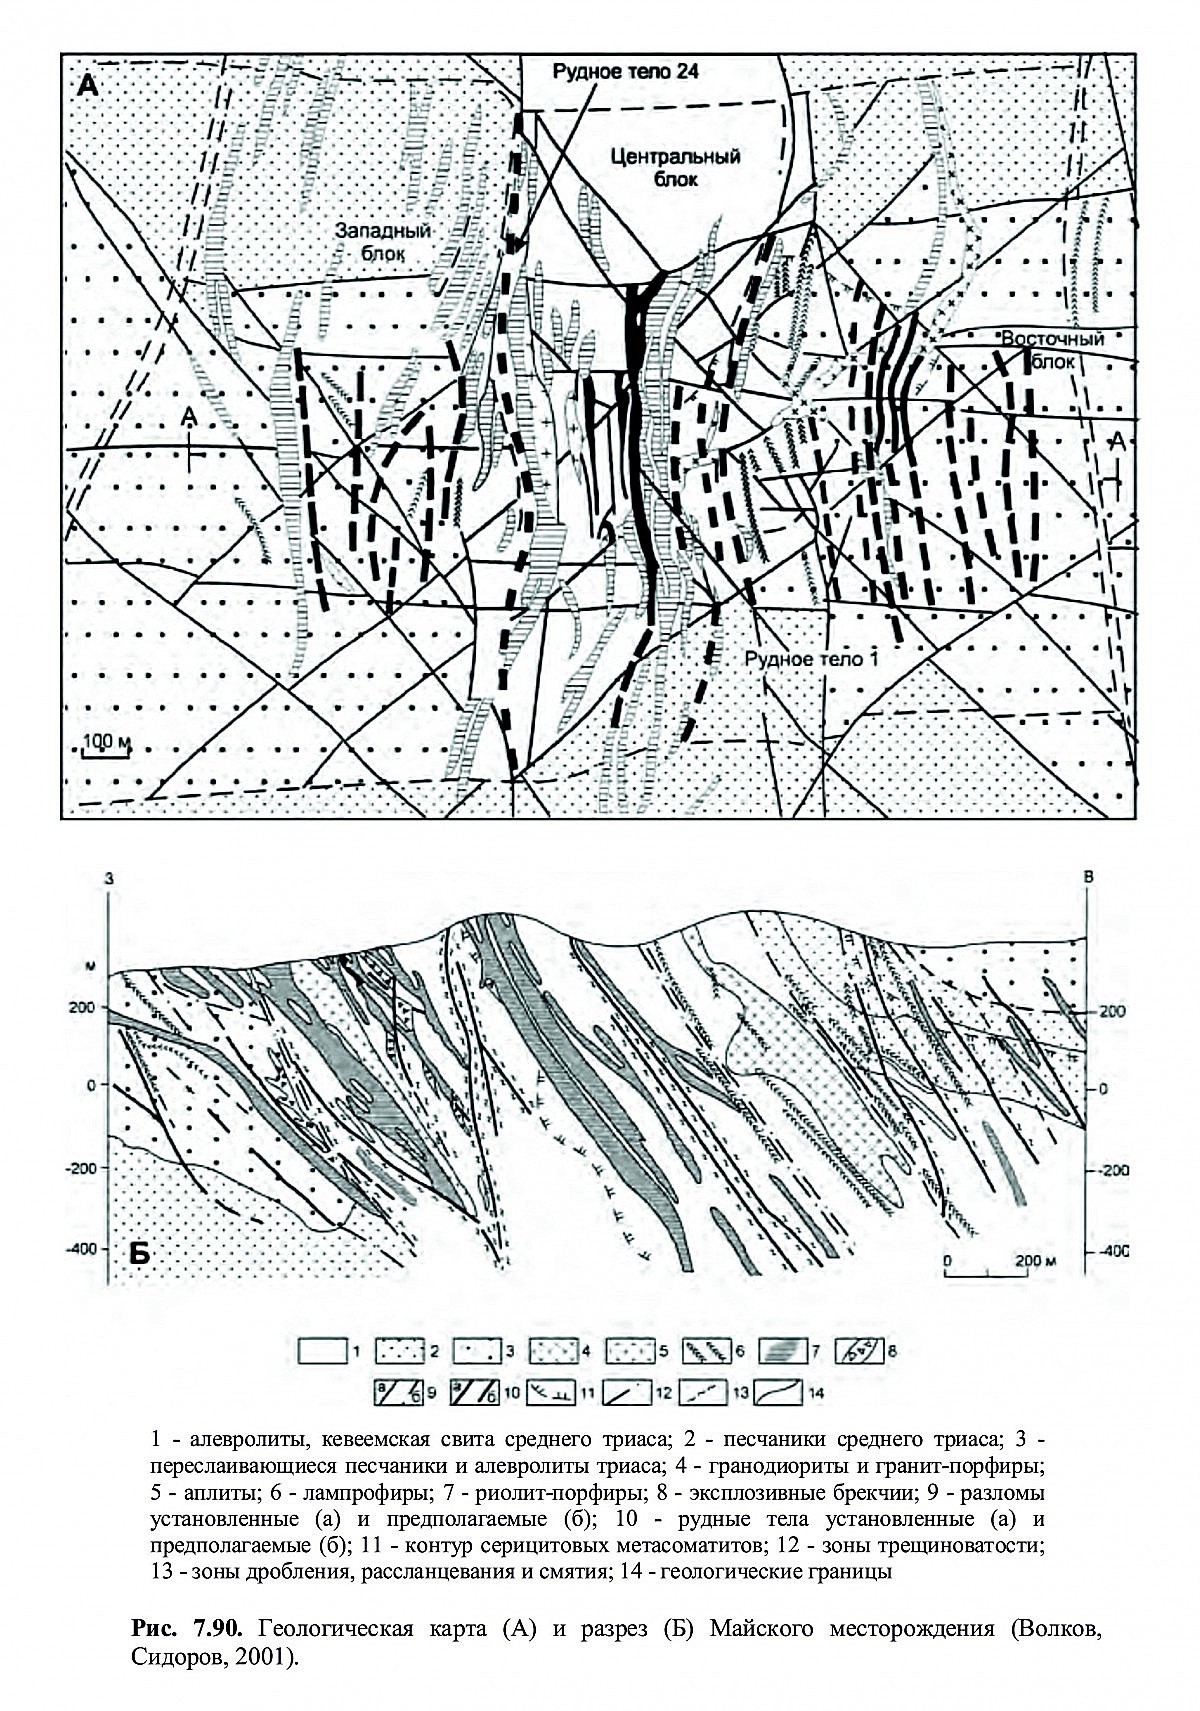 Майское месторождение (геологическая карта). Фотография месторождения. Майское (Au) месторождение, Северо-Восточный регион, Россия.